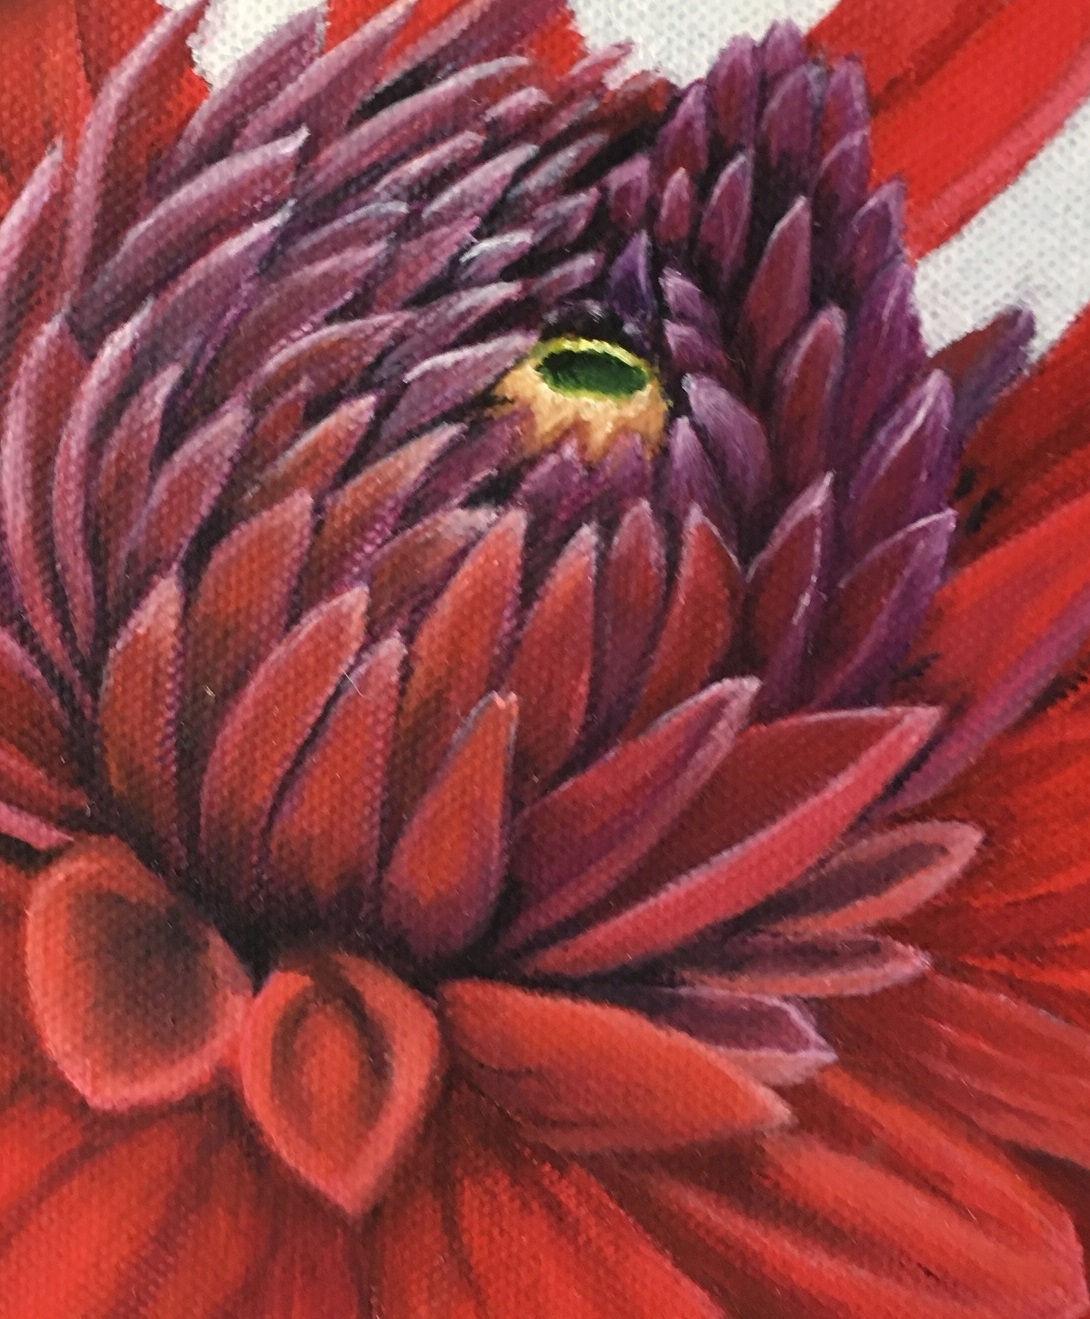 Une photo en gros plan du daliah rouge. Il s'agit de l'une des quatre peintures de fleurs aux couleurs vives et presque stylisées.

A propos de l'artiste :

Esther Hansen a grandi à la campagne et vit aujourd'hui dans une ferme. Elle a commencé